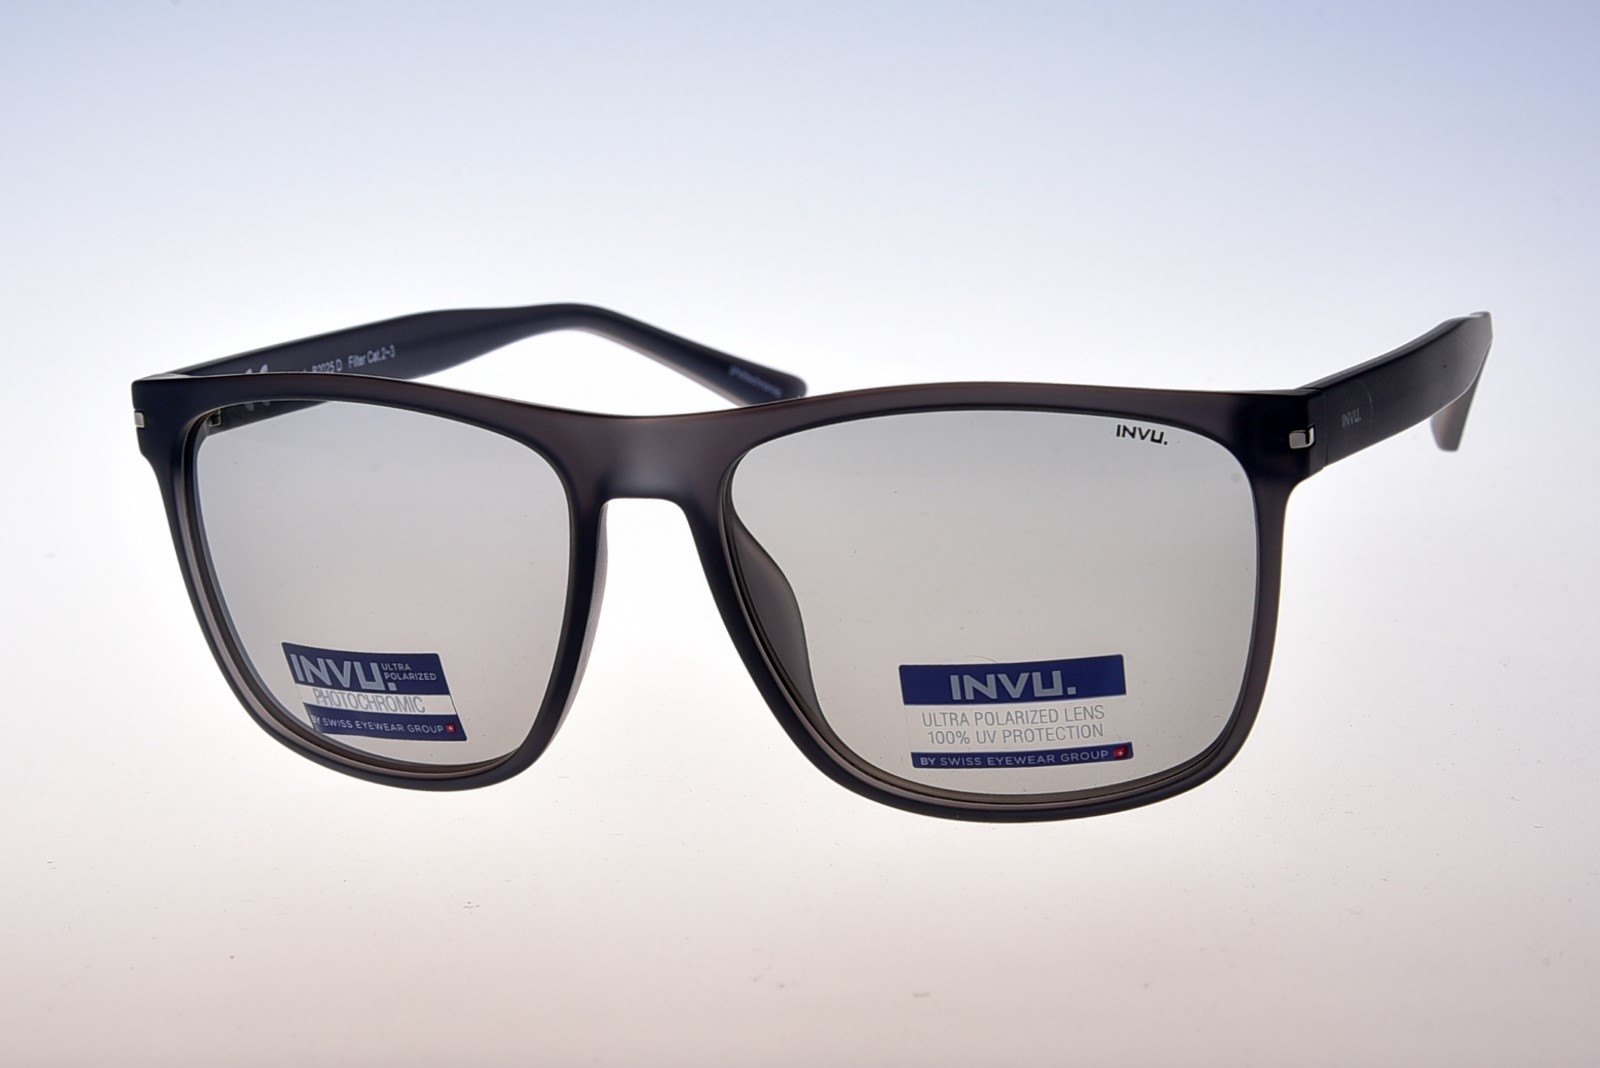 INVU. B2025D - Pánske slnečné okuliare